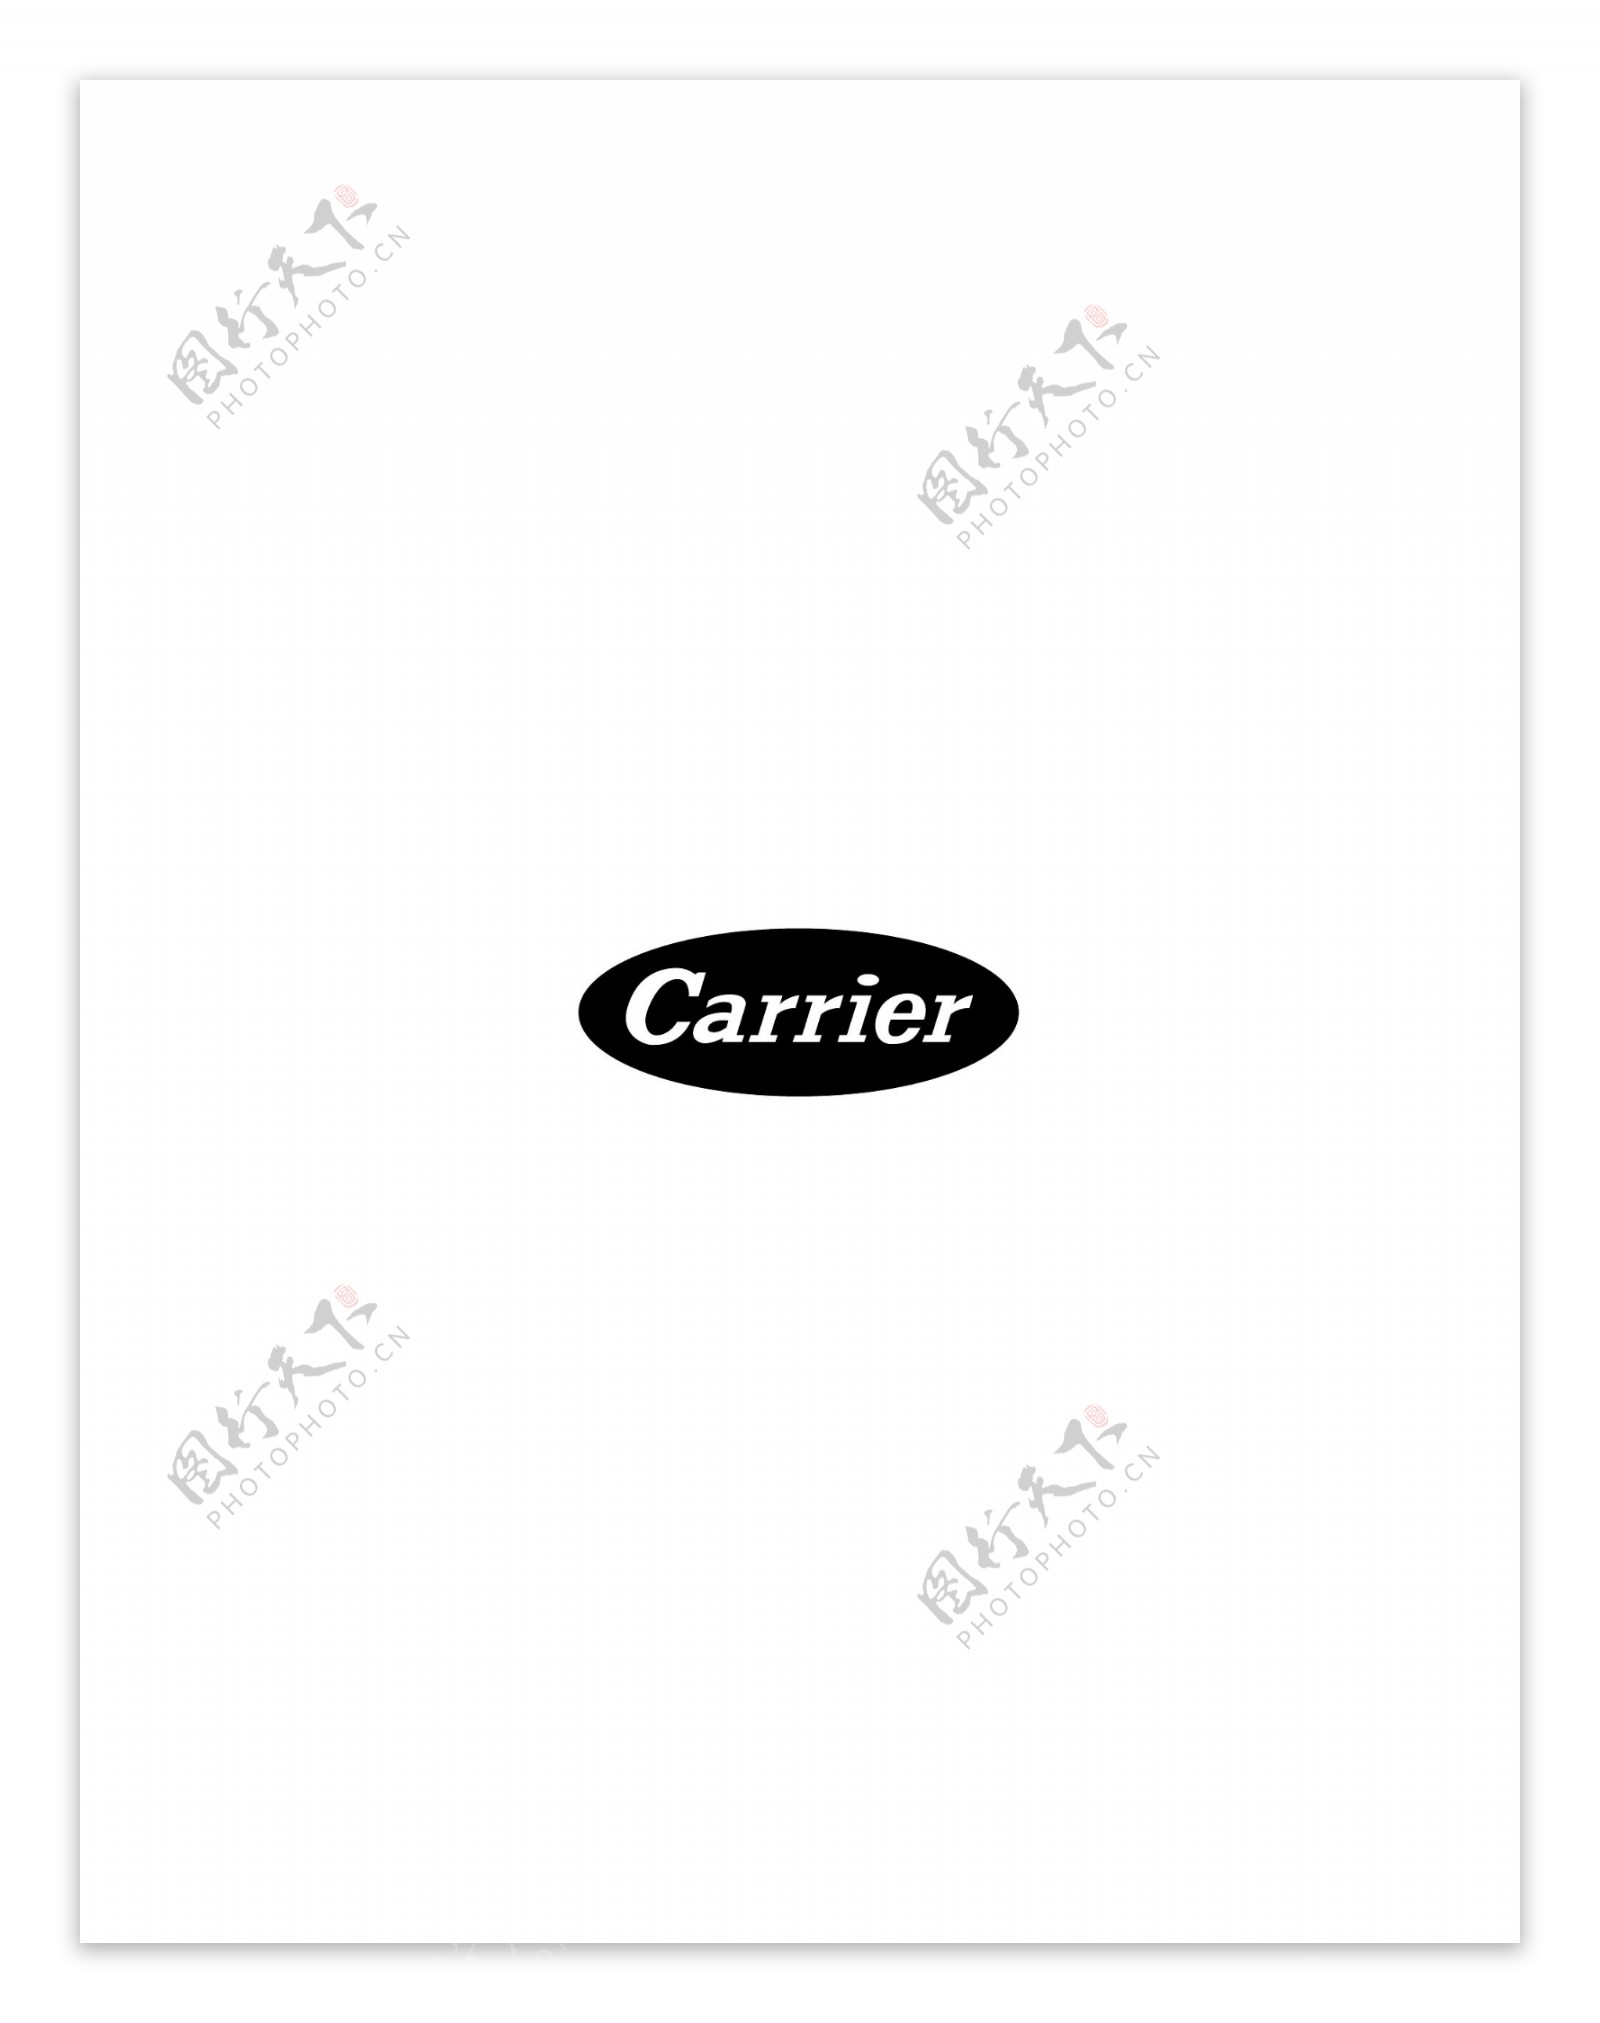 Carrier1logo设计欣赏Carrier1航空业标志下载标志设计欣赏